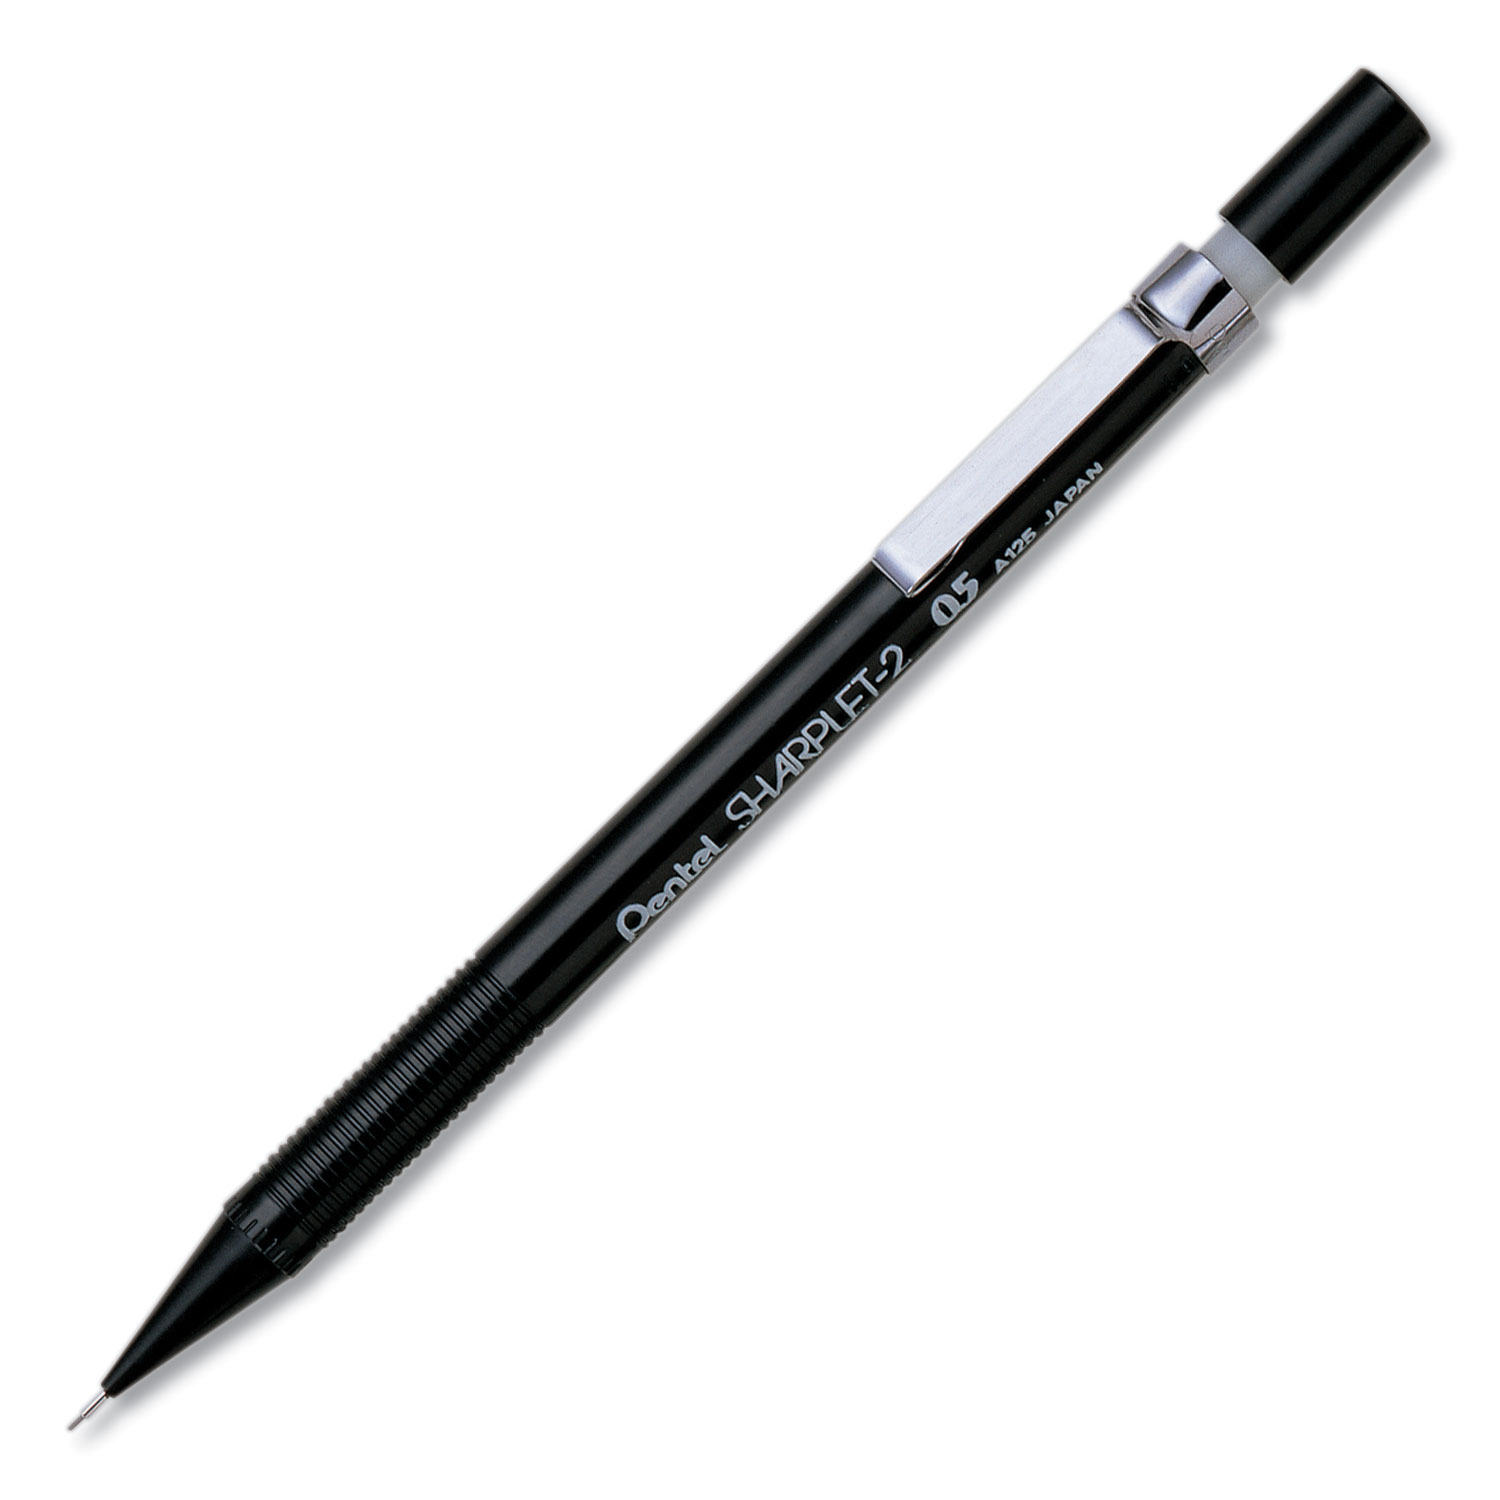  Pentel A125A Sharplet-2 Mechanical Pencil, 0.5 mm, HB (#2.5), Black Lead, Black Barrel (PENA125A) 